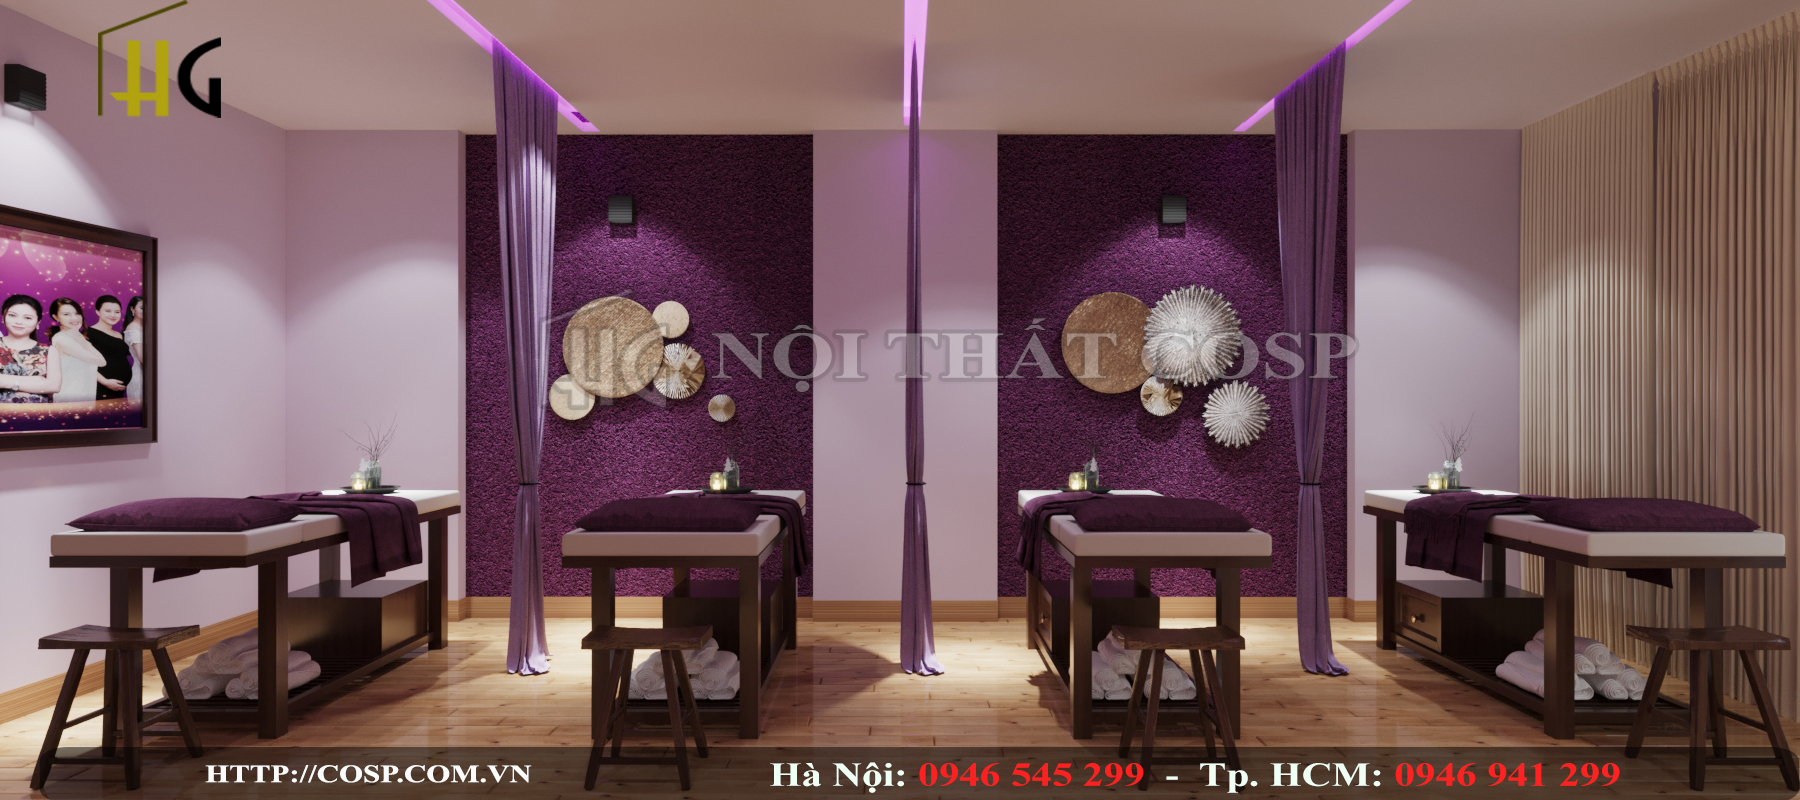 Hình ảnh phòng massage spa Bảo Hà - Ninh Bình